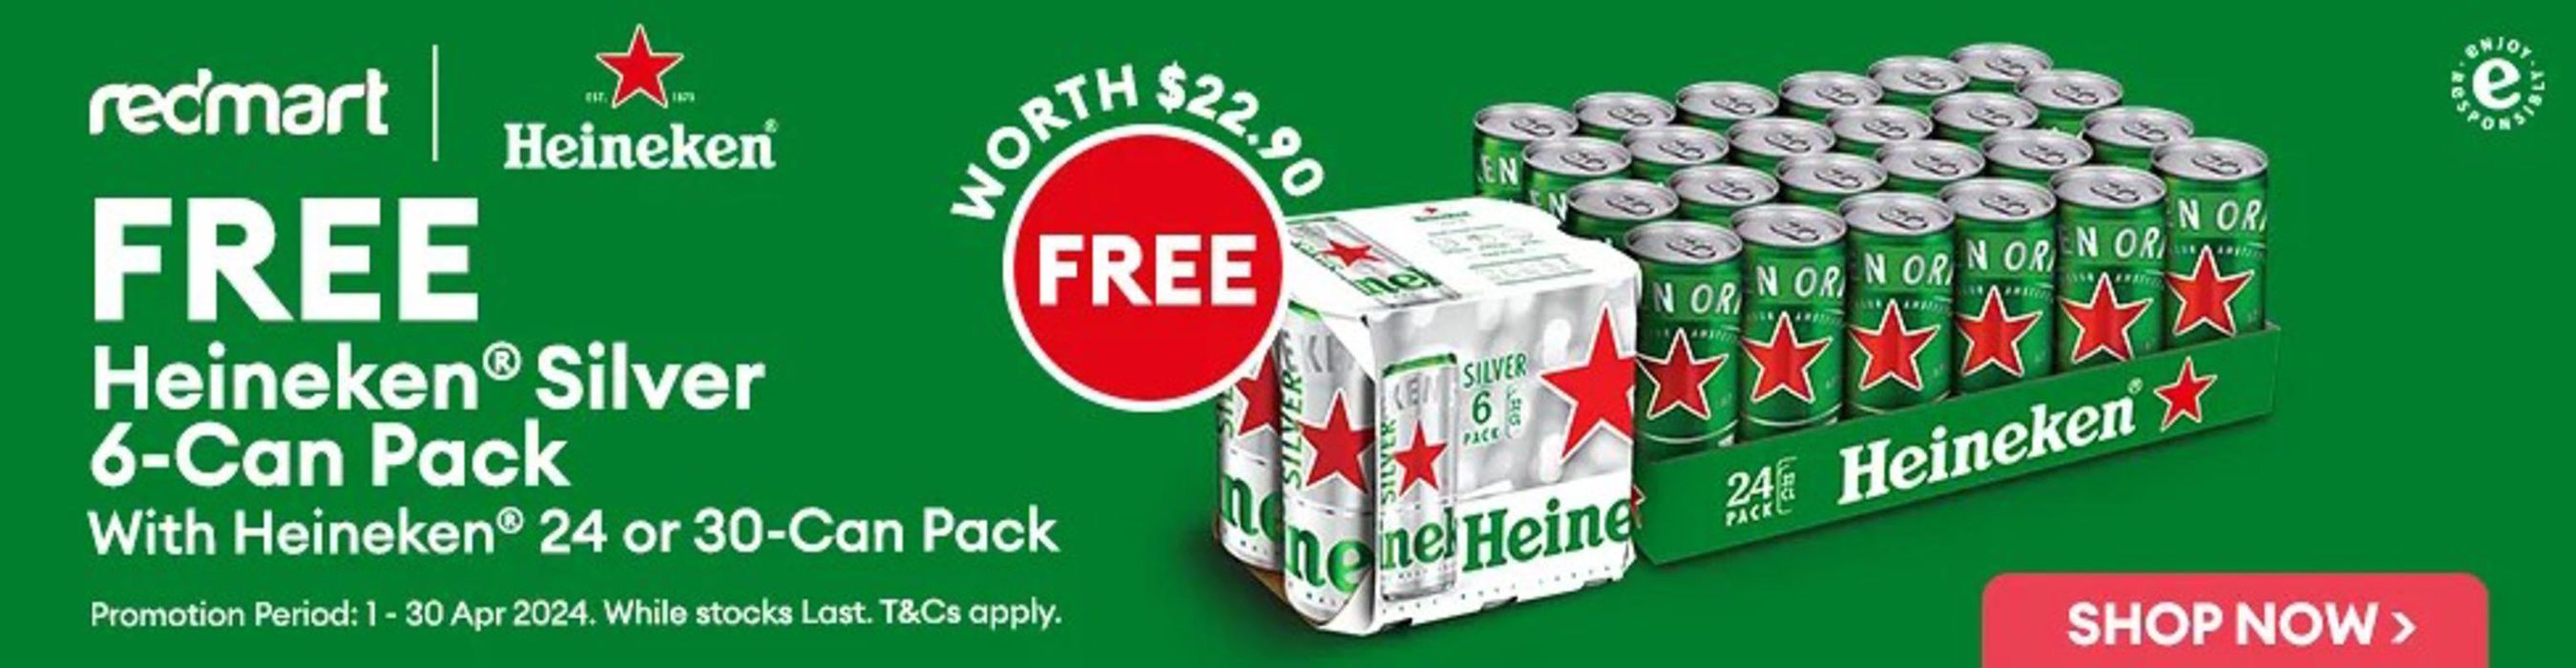 RedMart catalogue | Free Heineken 6-can pack | 15/04/2024 - 30/04/2024